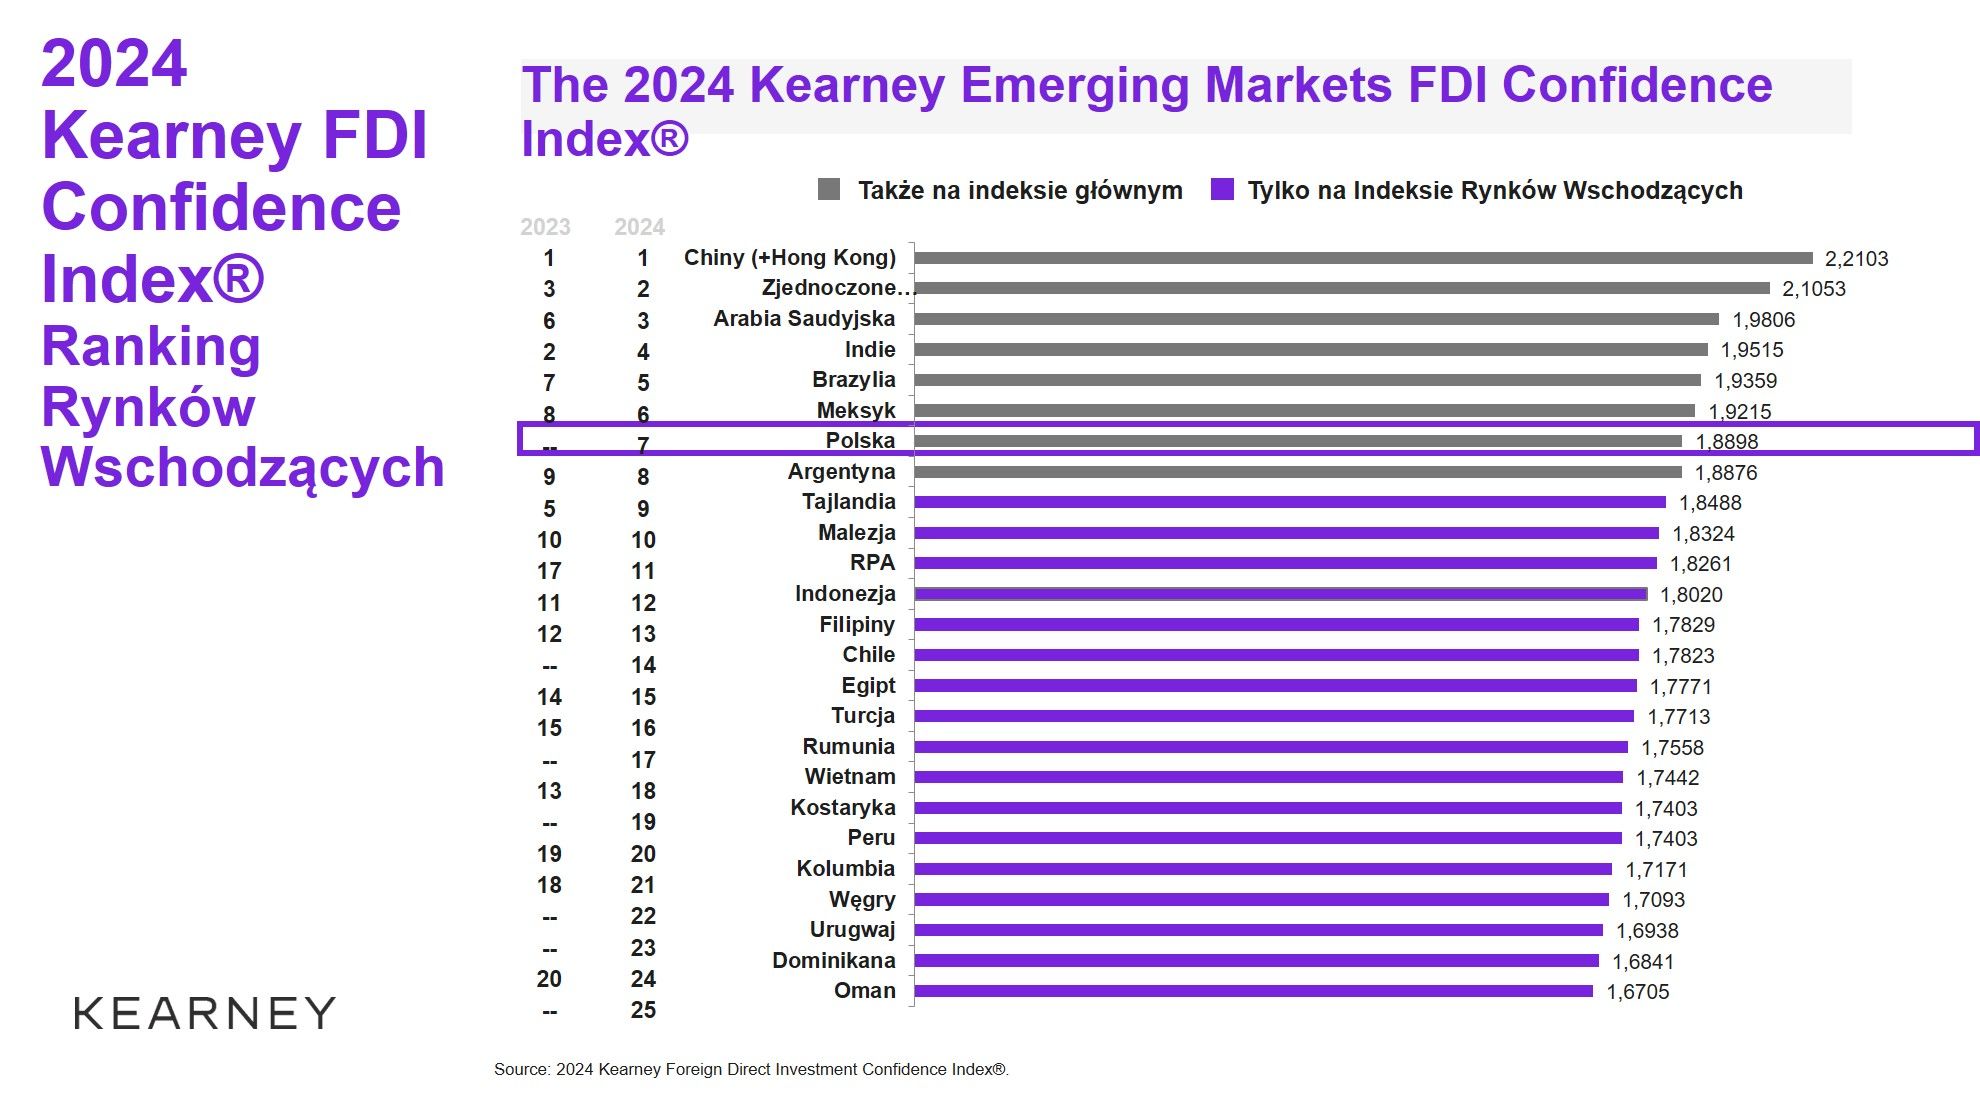 Kearney_FDI Confidence Index 2024_rynki wschodzące.jpg